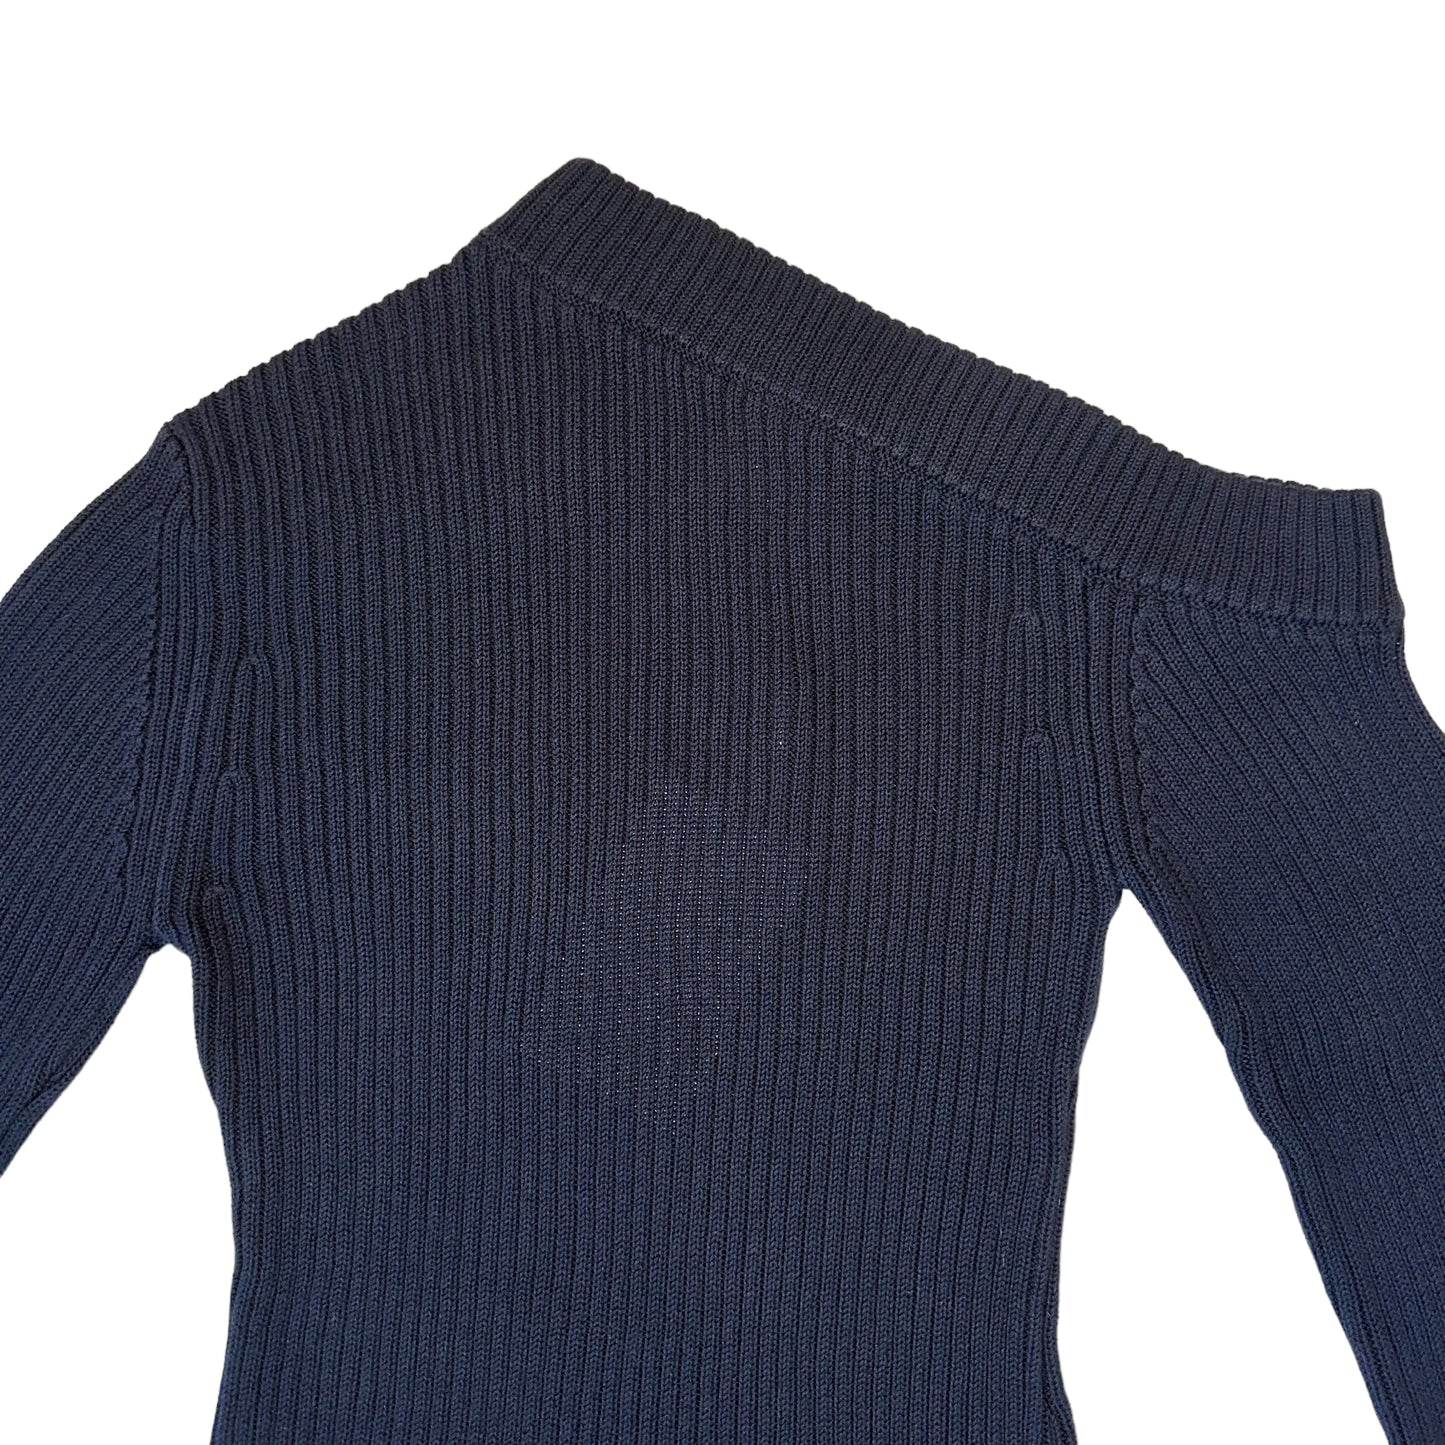 Black One-Shoulder Sweater - M